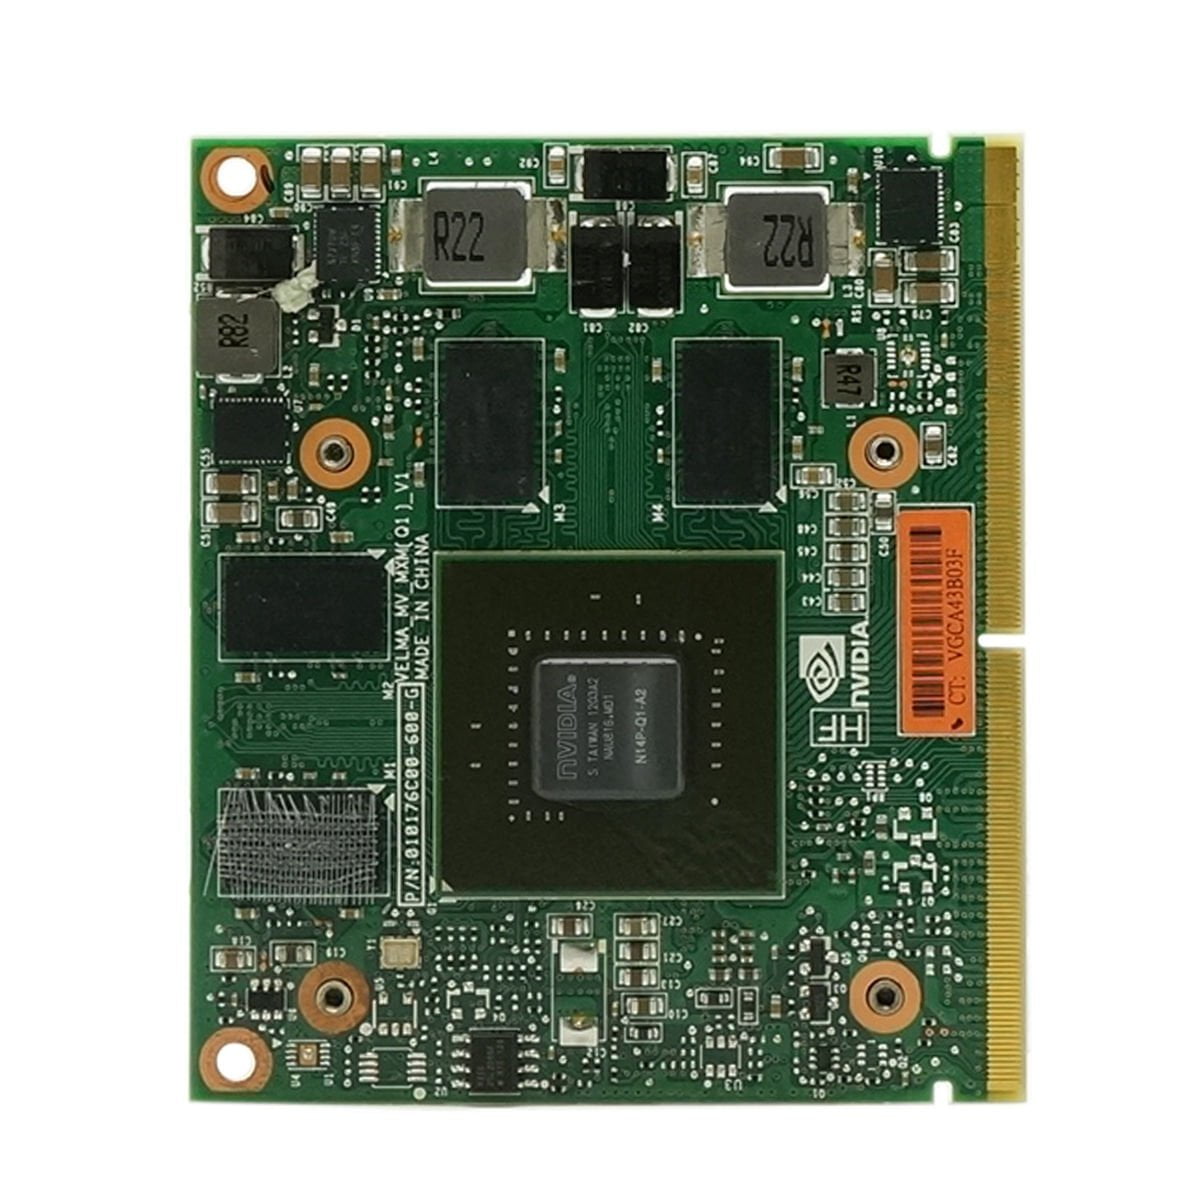 PNY Video Card GC-69V03453-CG GTX 680M 4GB DDR5 MXM TYPE-B for HP 